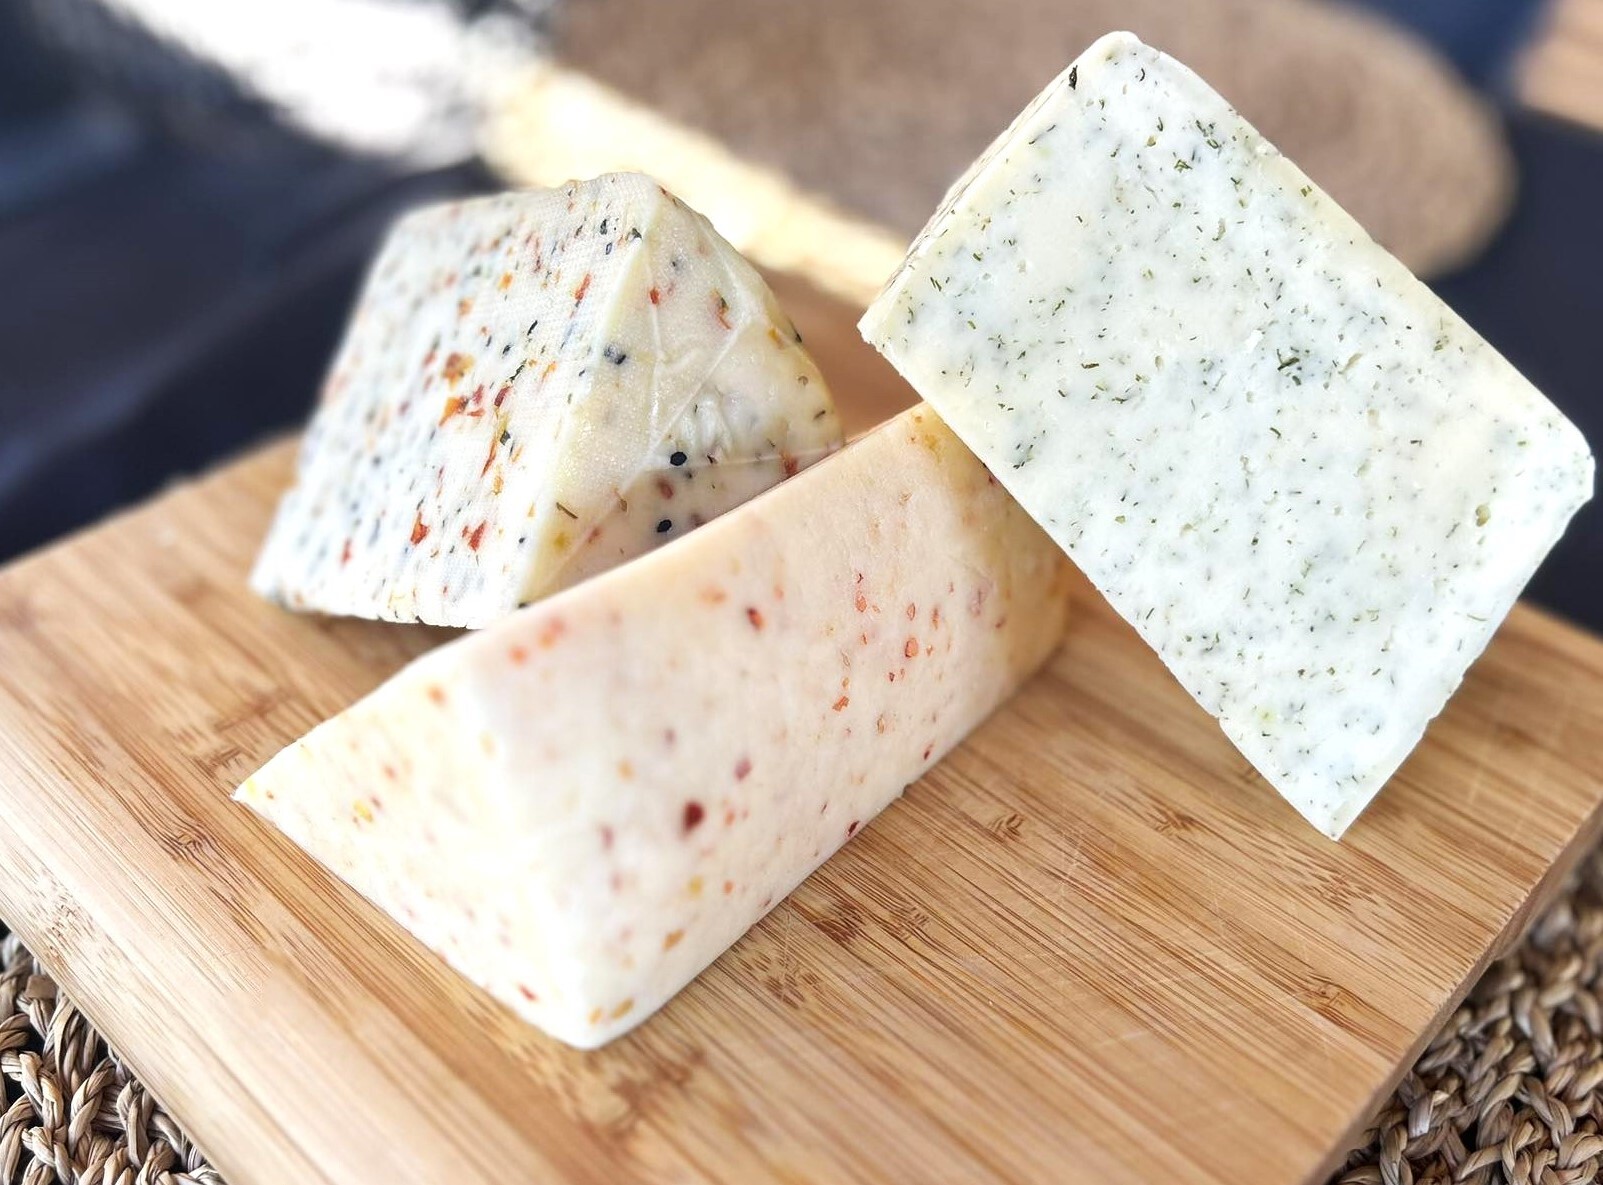 Trzy trójkątne kawałki sera ułożone na desce